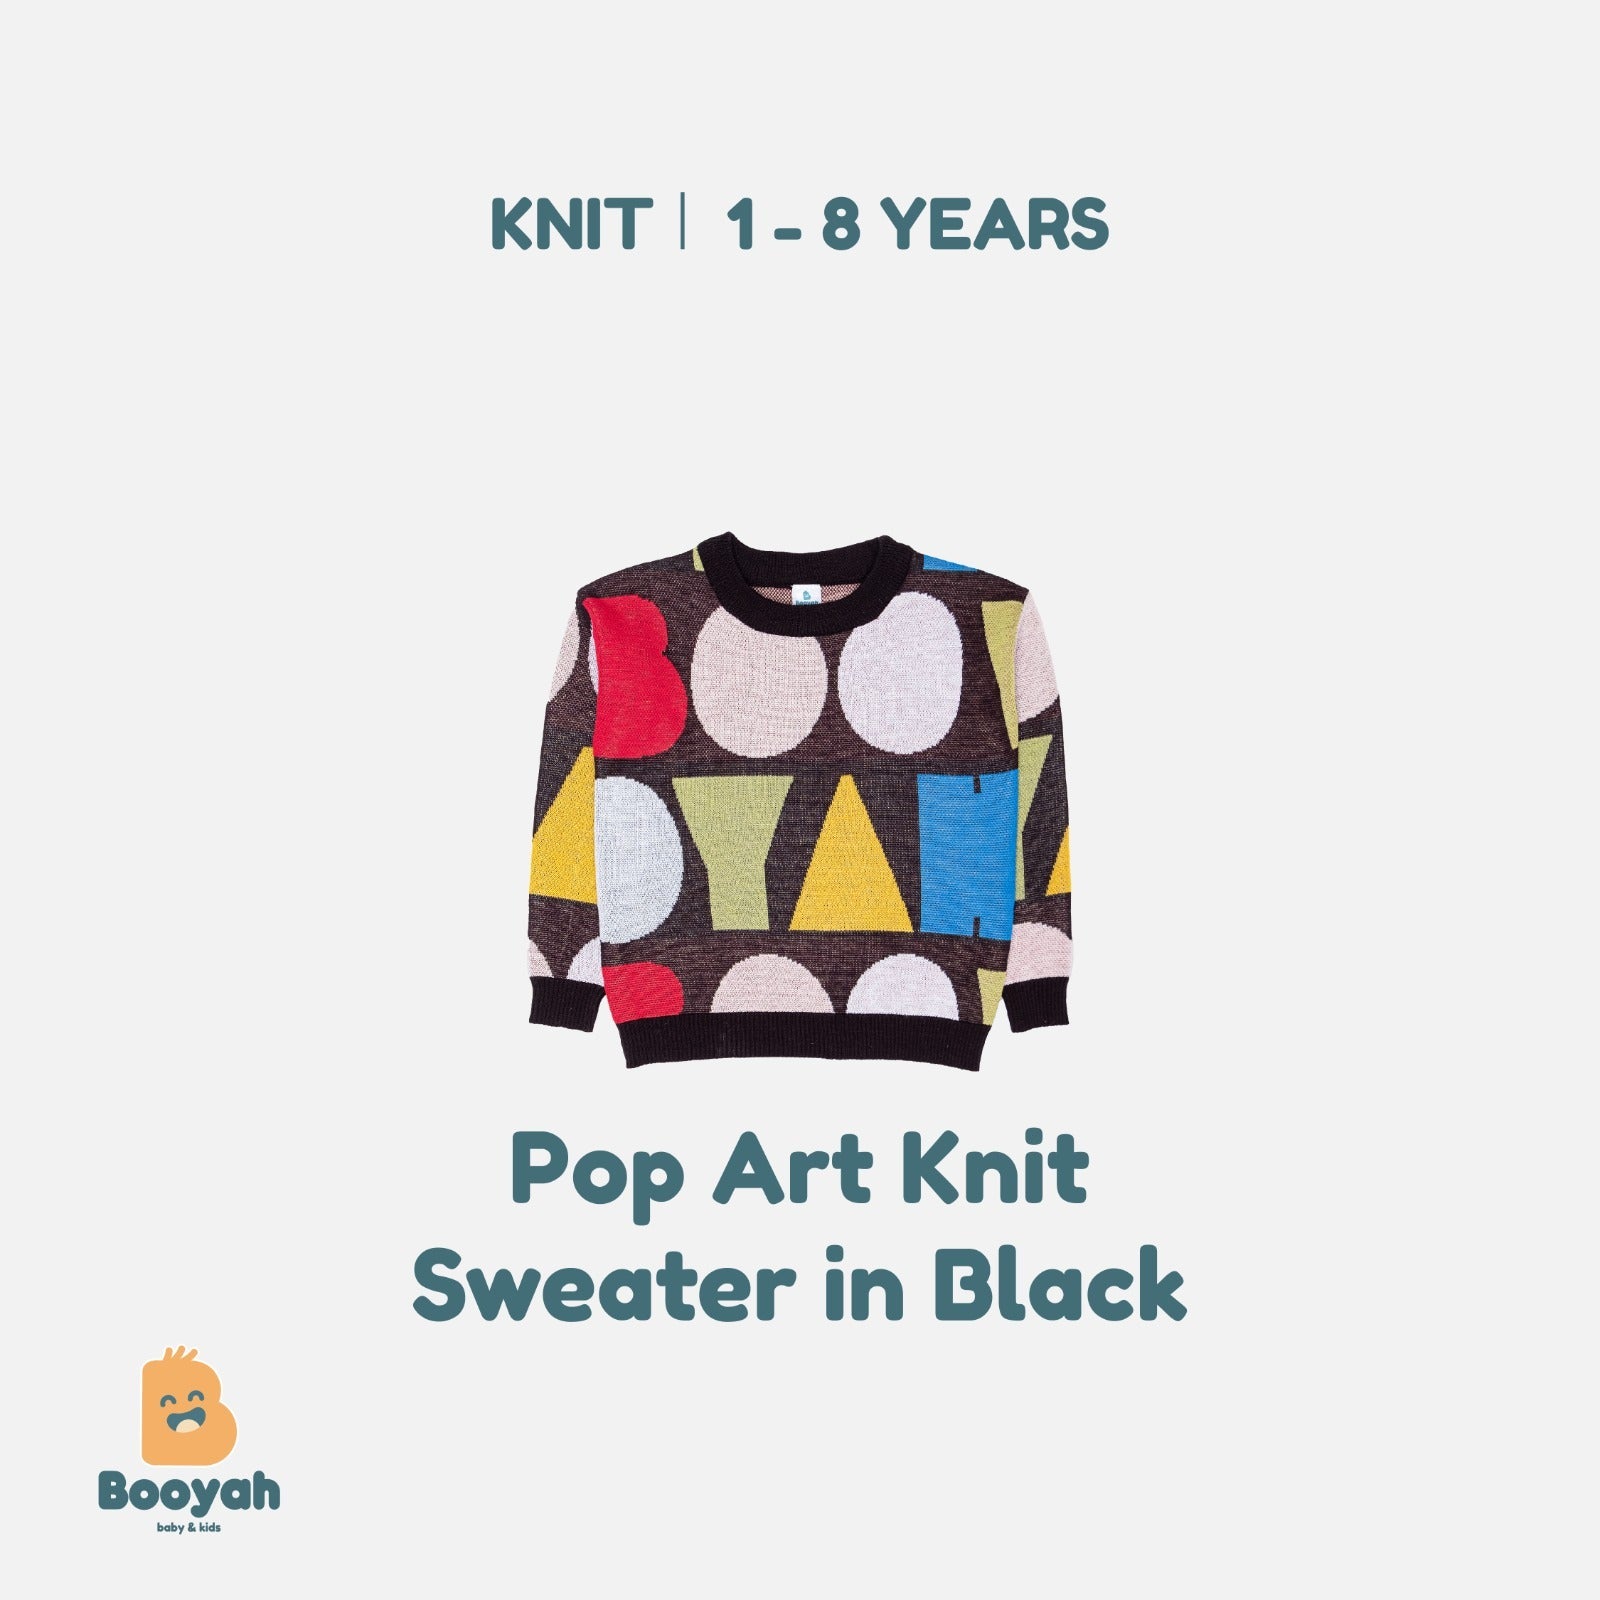 Booyah Baby & Kids Pop Art Knit Sweater in Black